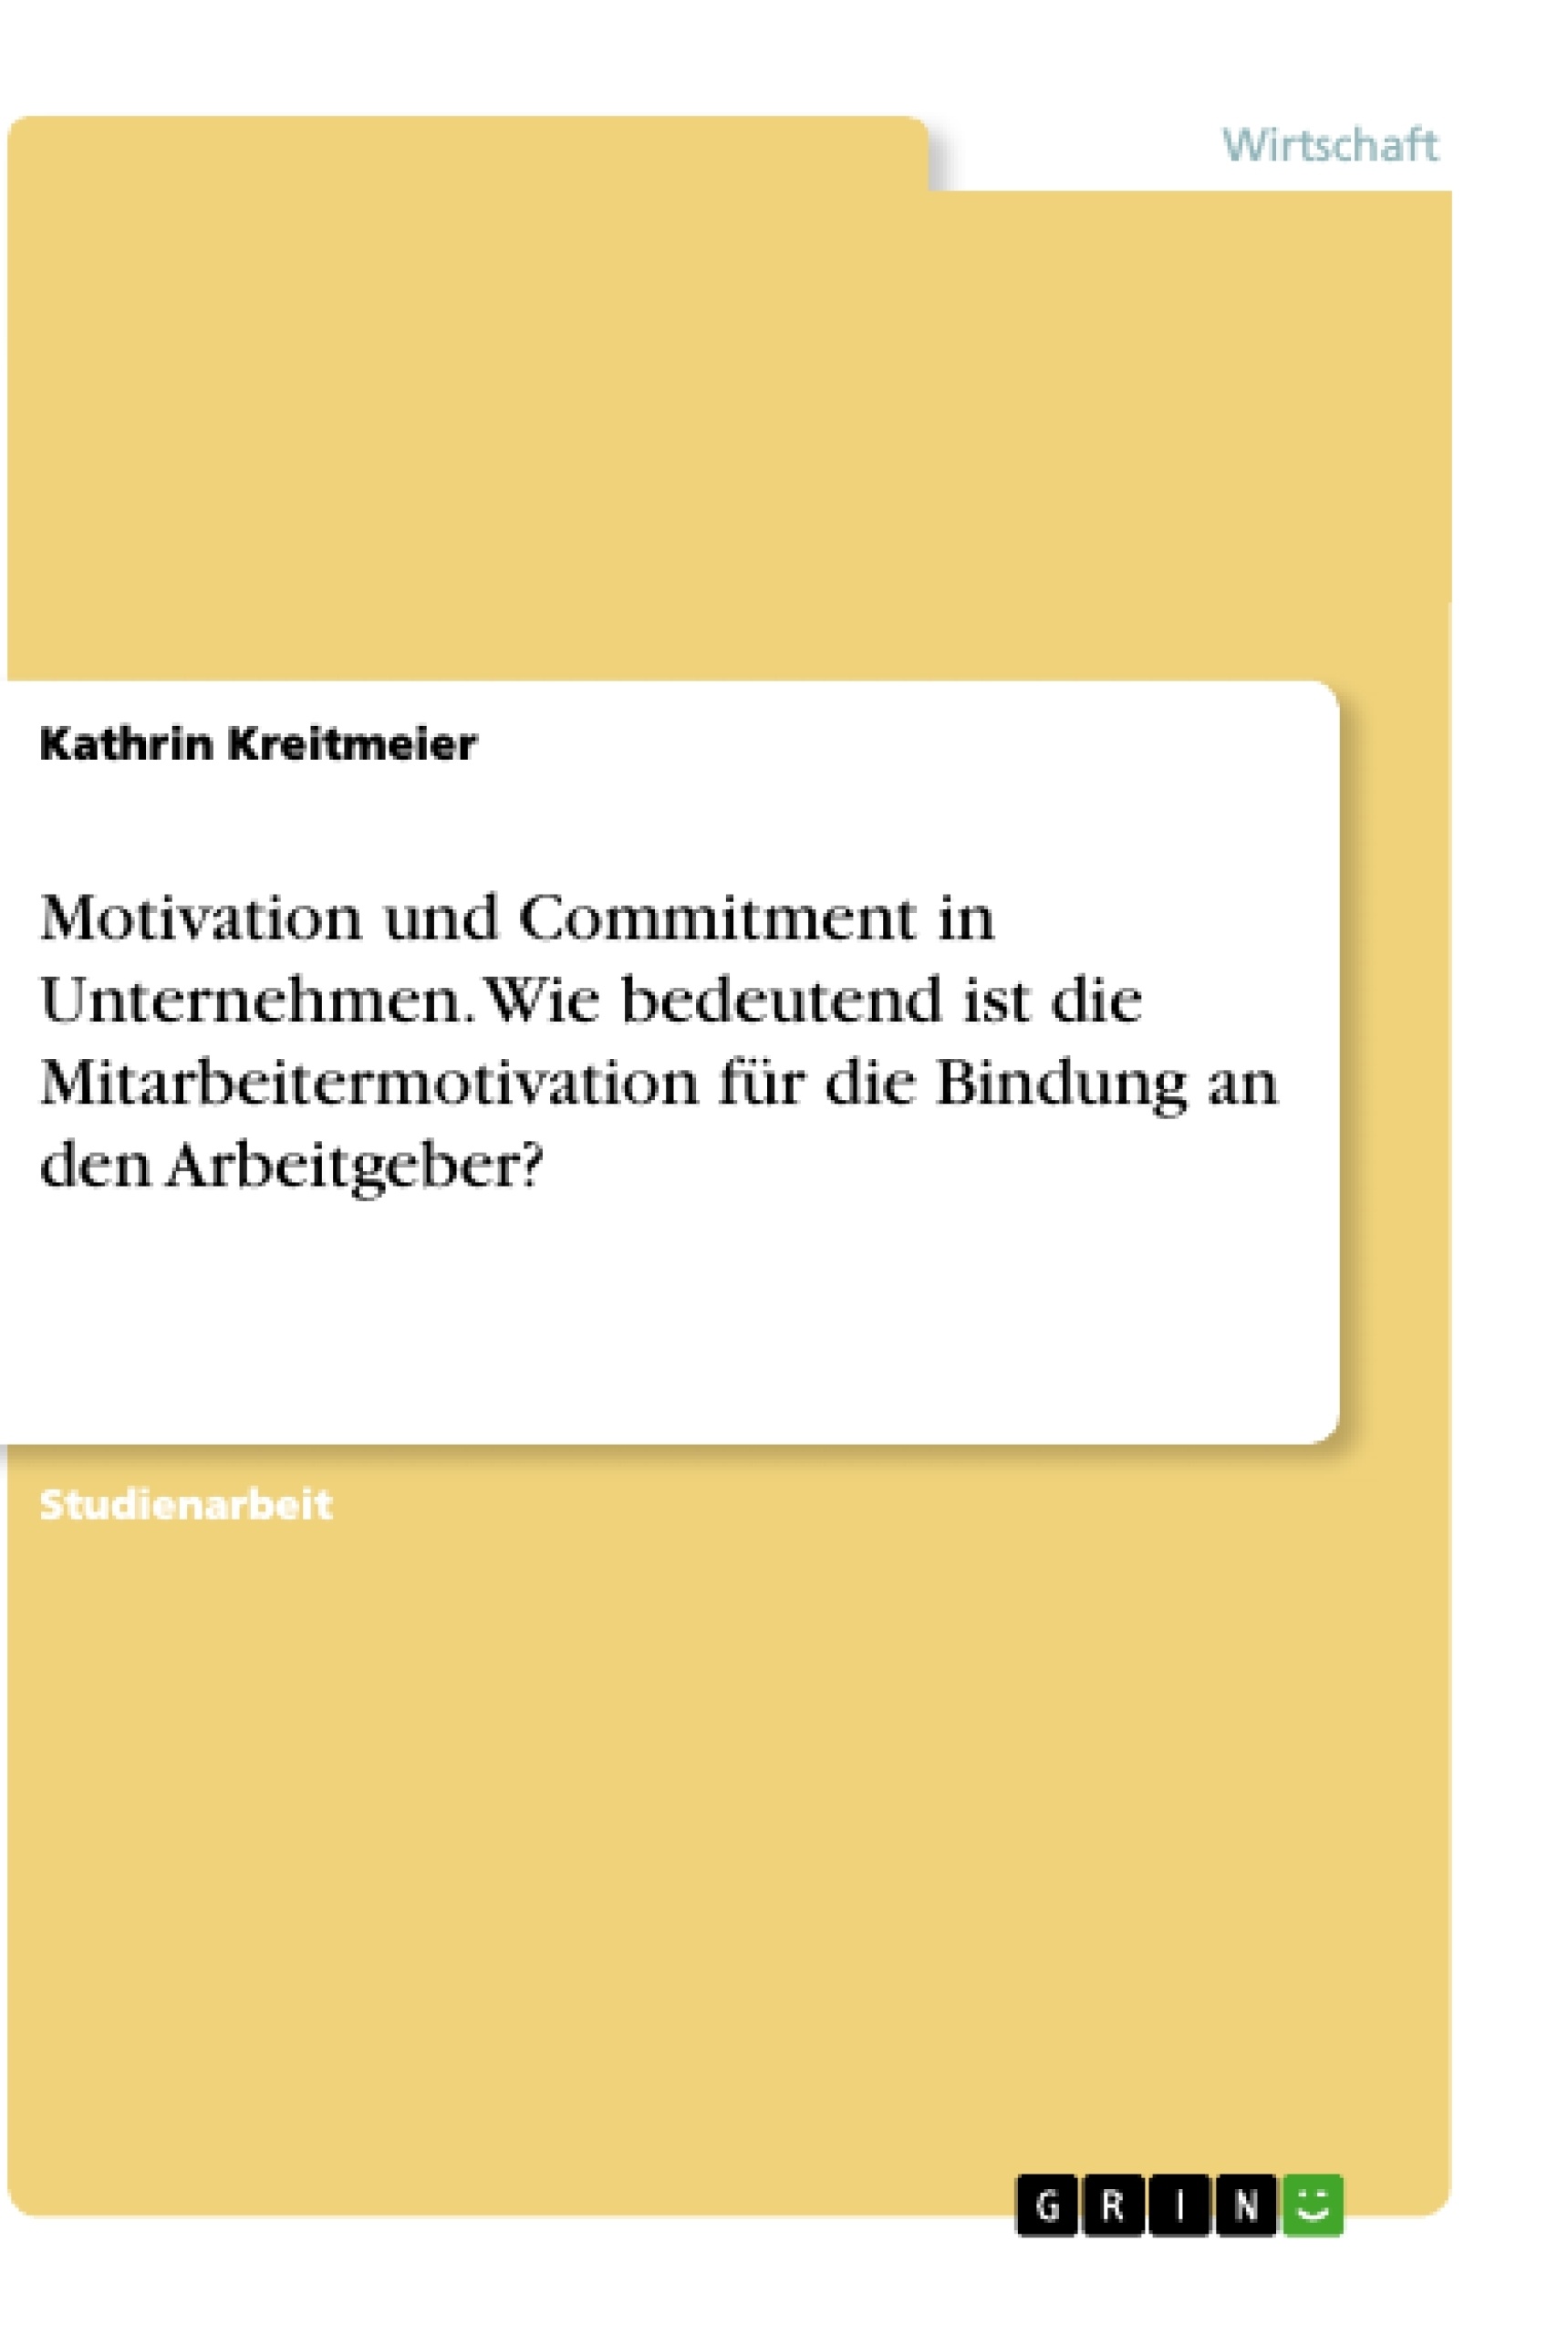 Título: Motivation und Commitment in Unternehmen. Wie bedeutend ist die Mitarbeitermotivation für die Bindung an den Arbeitgeber?